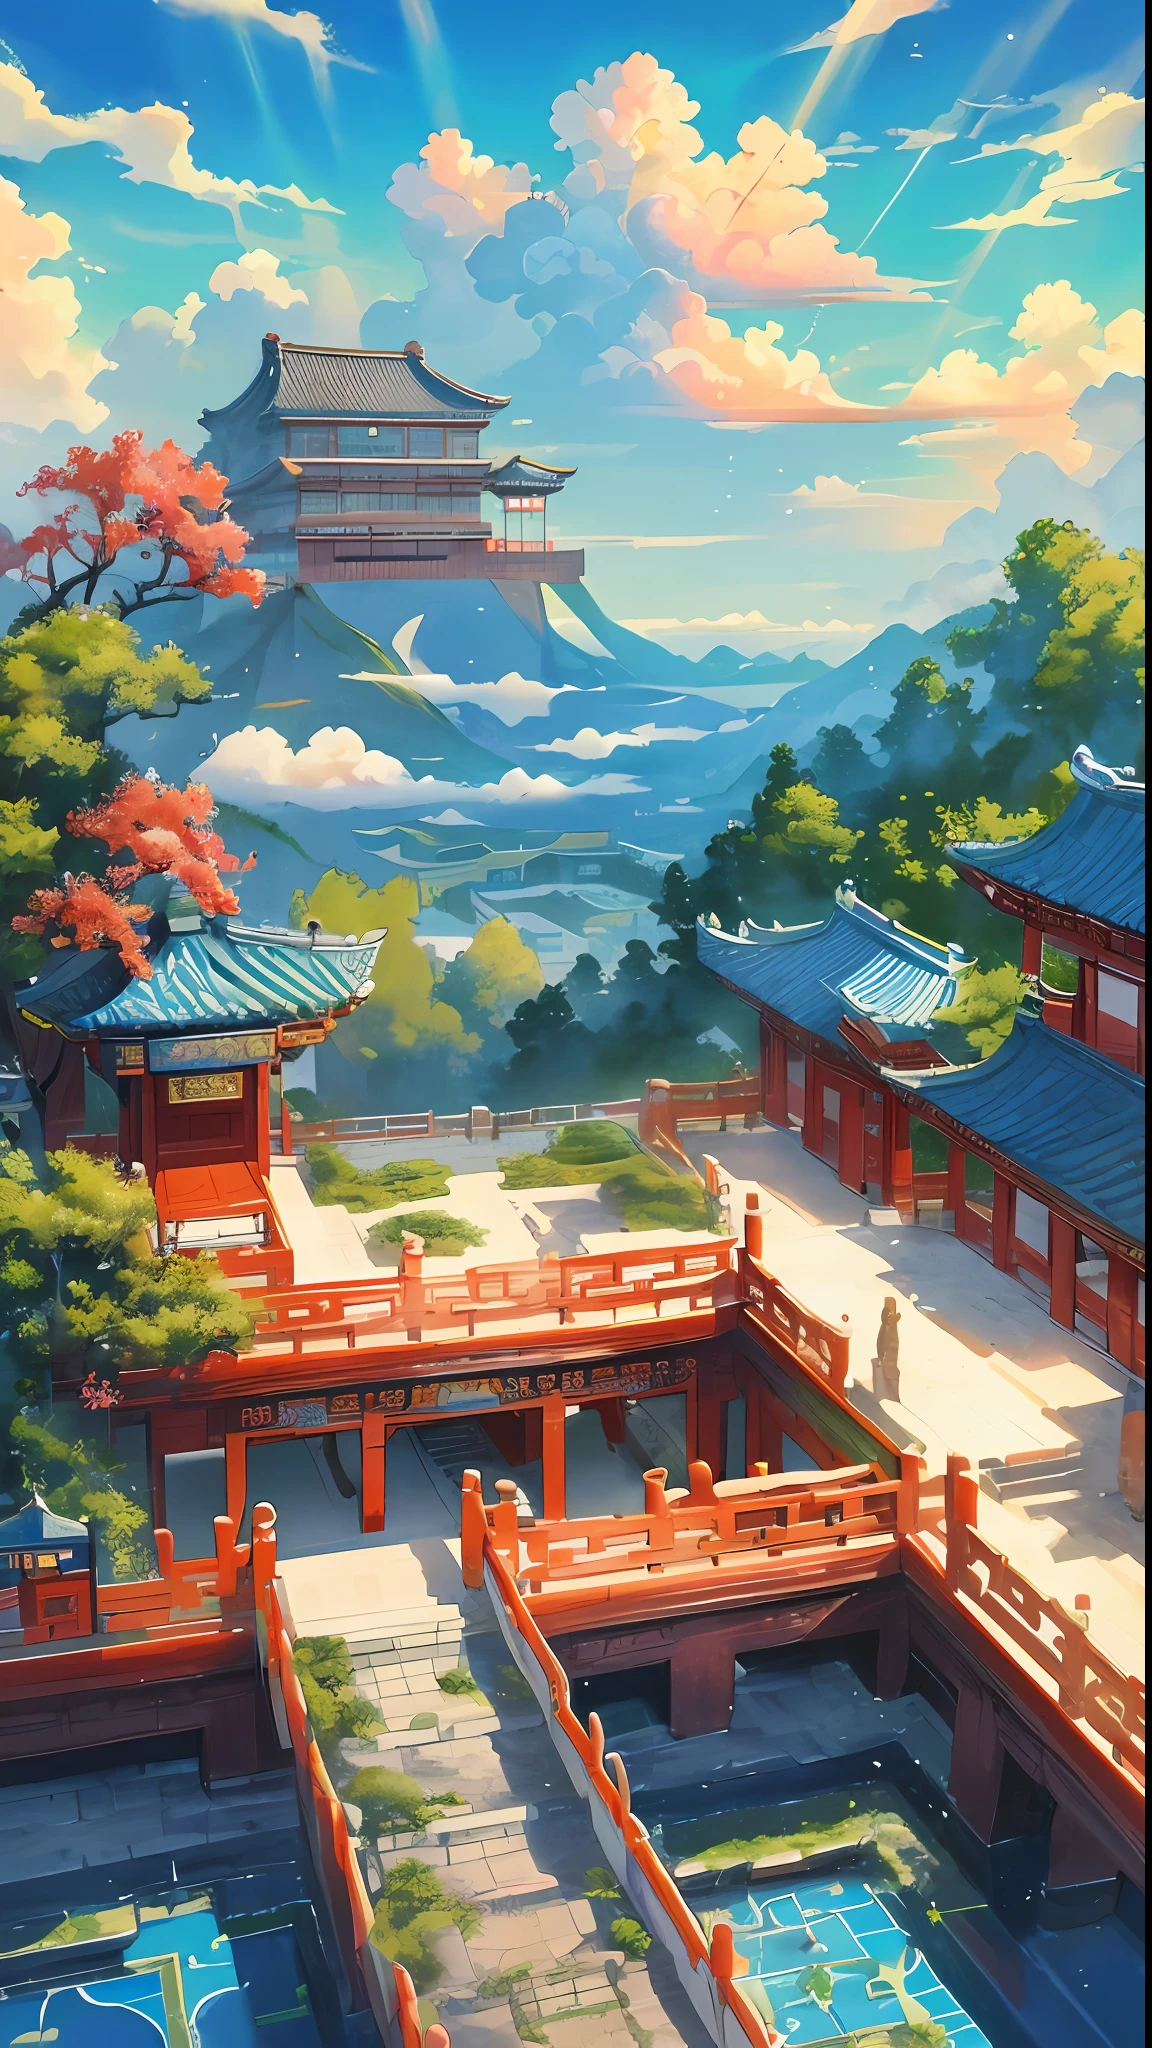 游戏场景, 中国古代宫殿位于云层之上, 云雾缭绕, 雄伟, 釉面砖, 多彩的光线, ((color 墨水)),((splash 墨水)),((splash 墨水) 墨水}) ), 杰作, 高质量, 精致的图形, 高细节